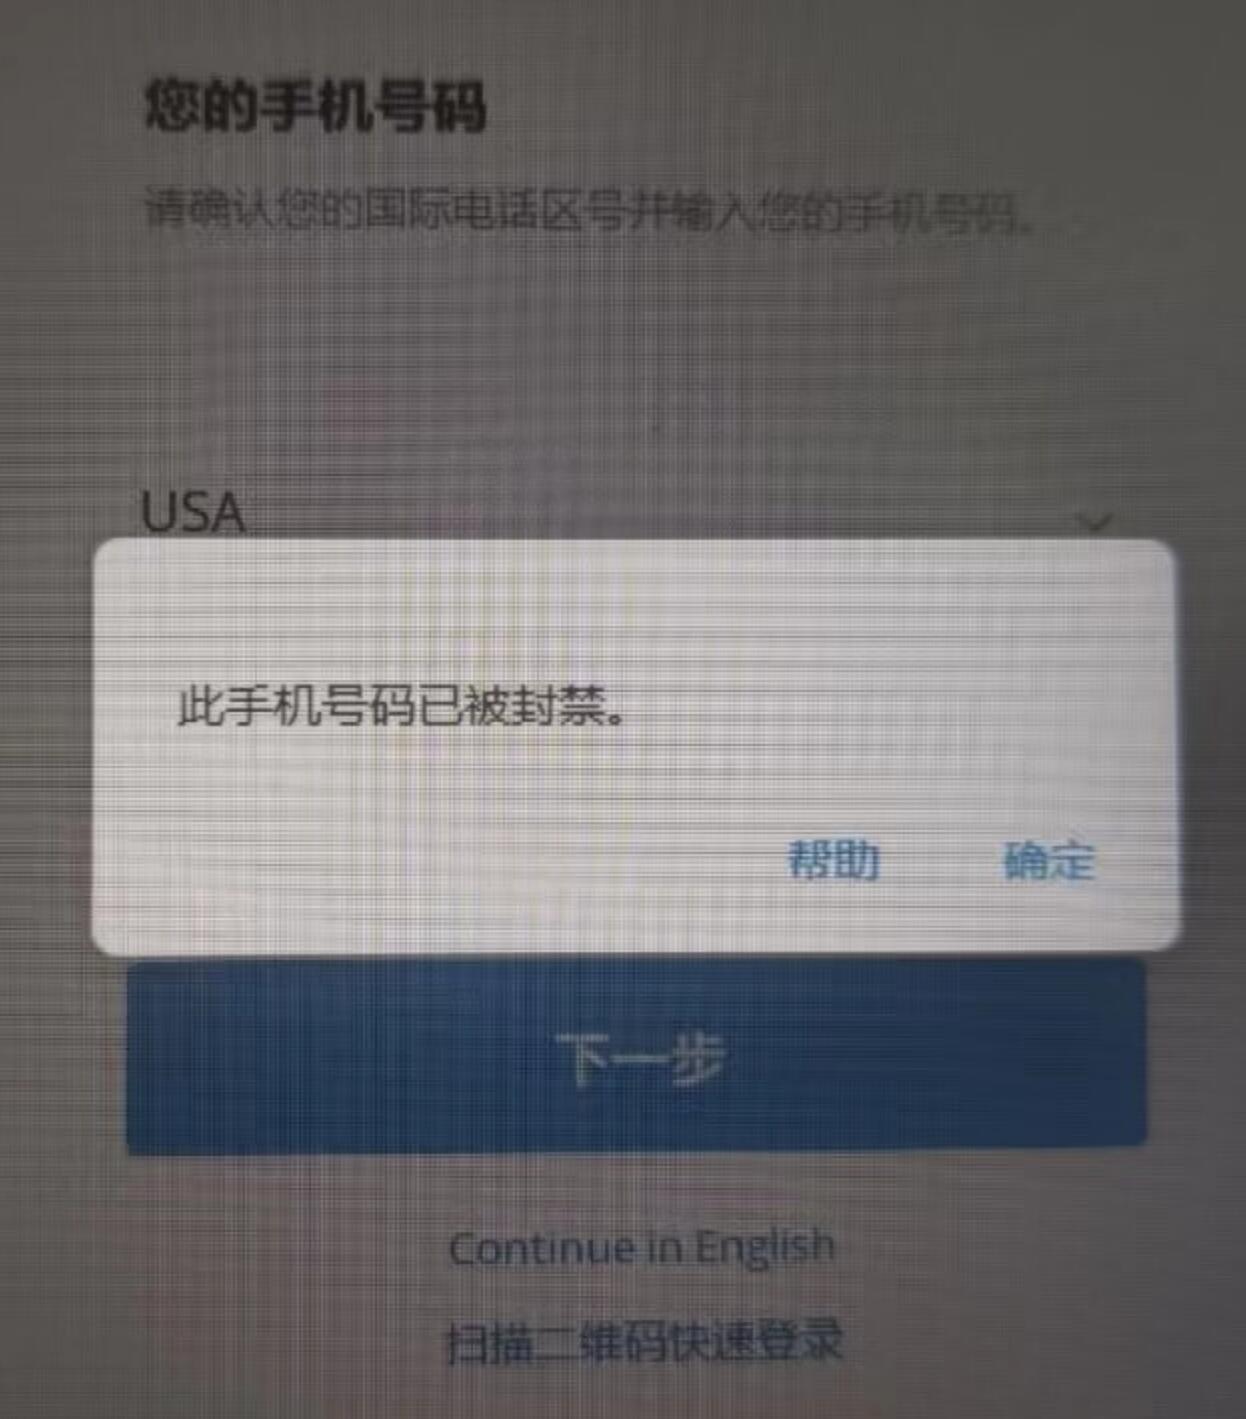 Telegram此号码已被封禁，快速解封的方法，解除this phone number is banned提醒-技术教程论坛-交流讨论-叼毛社区-全网免费资源基地-碉堡了论坛